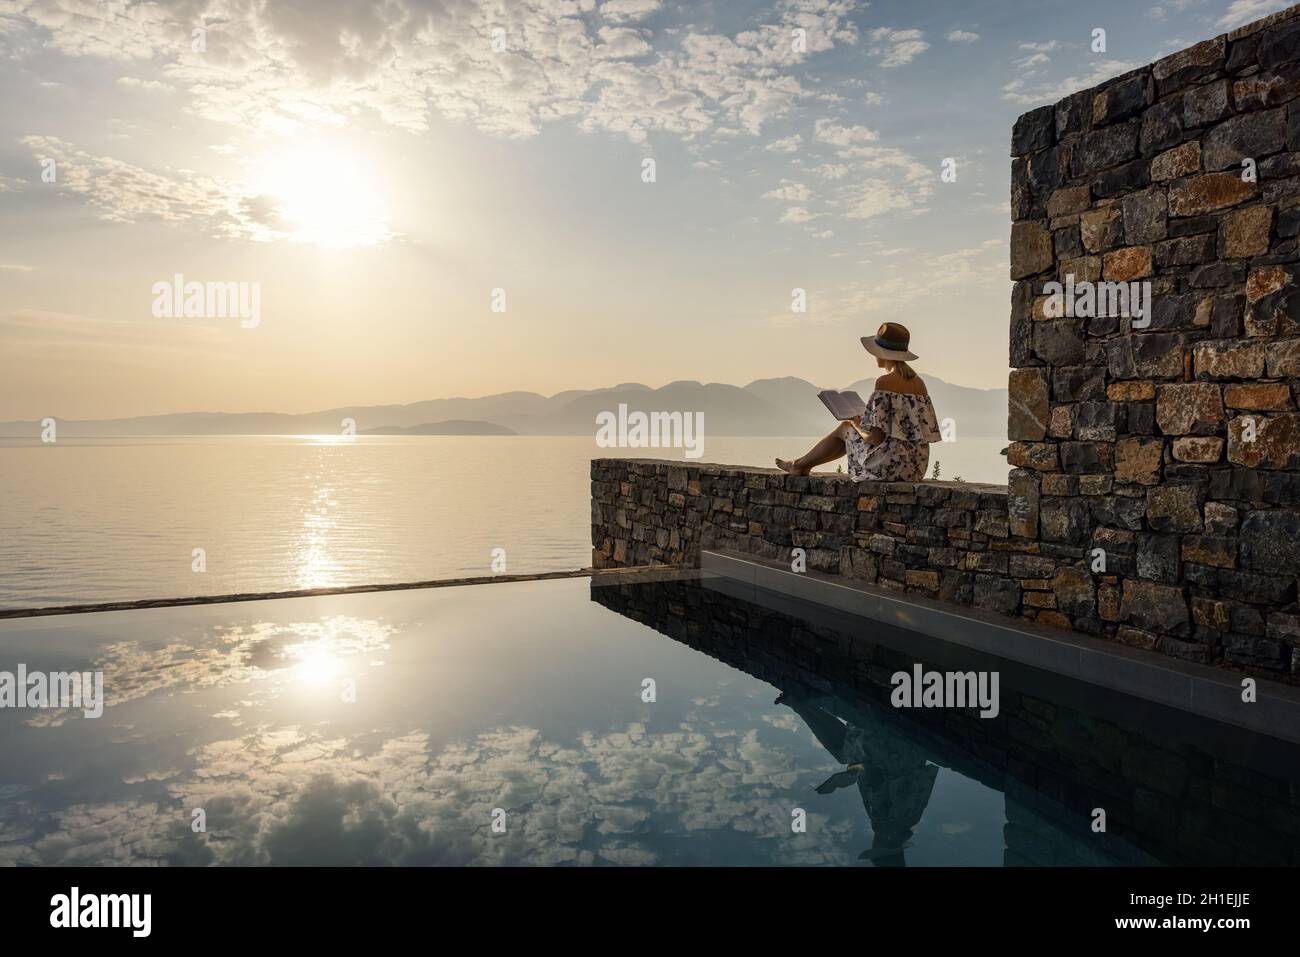 concetto di relax e meditazione - donna che legge un libro vicino alla piscina con vista sul mare all'alba in hotel di lusso Foto Stock